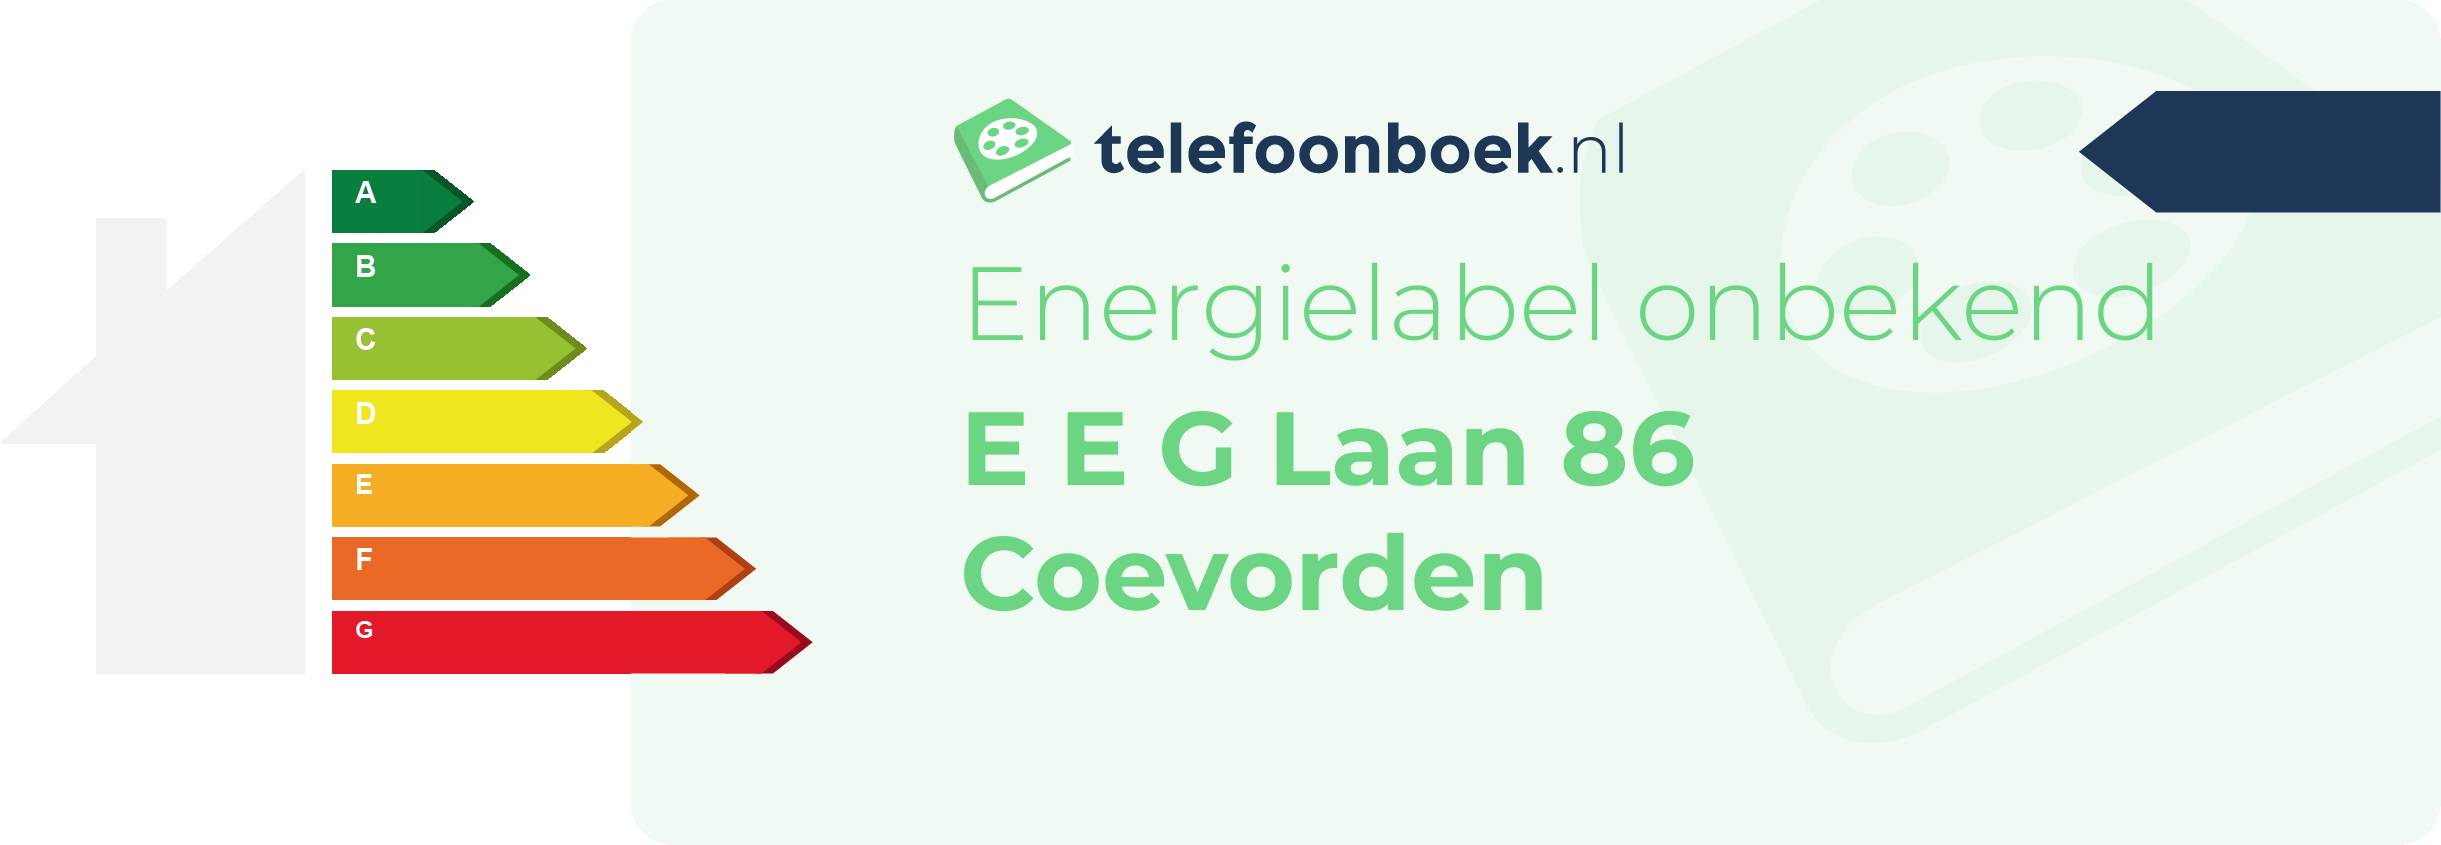 Energielabel E E G Laan 86 Coevorden